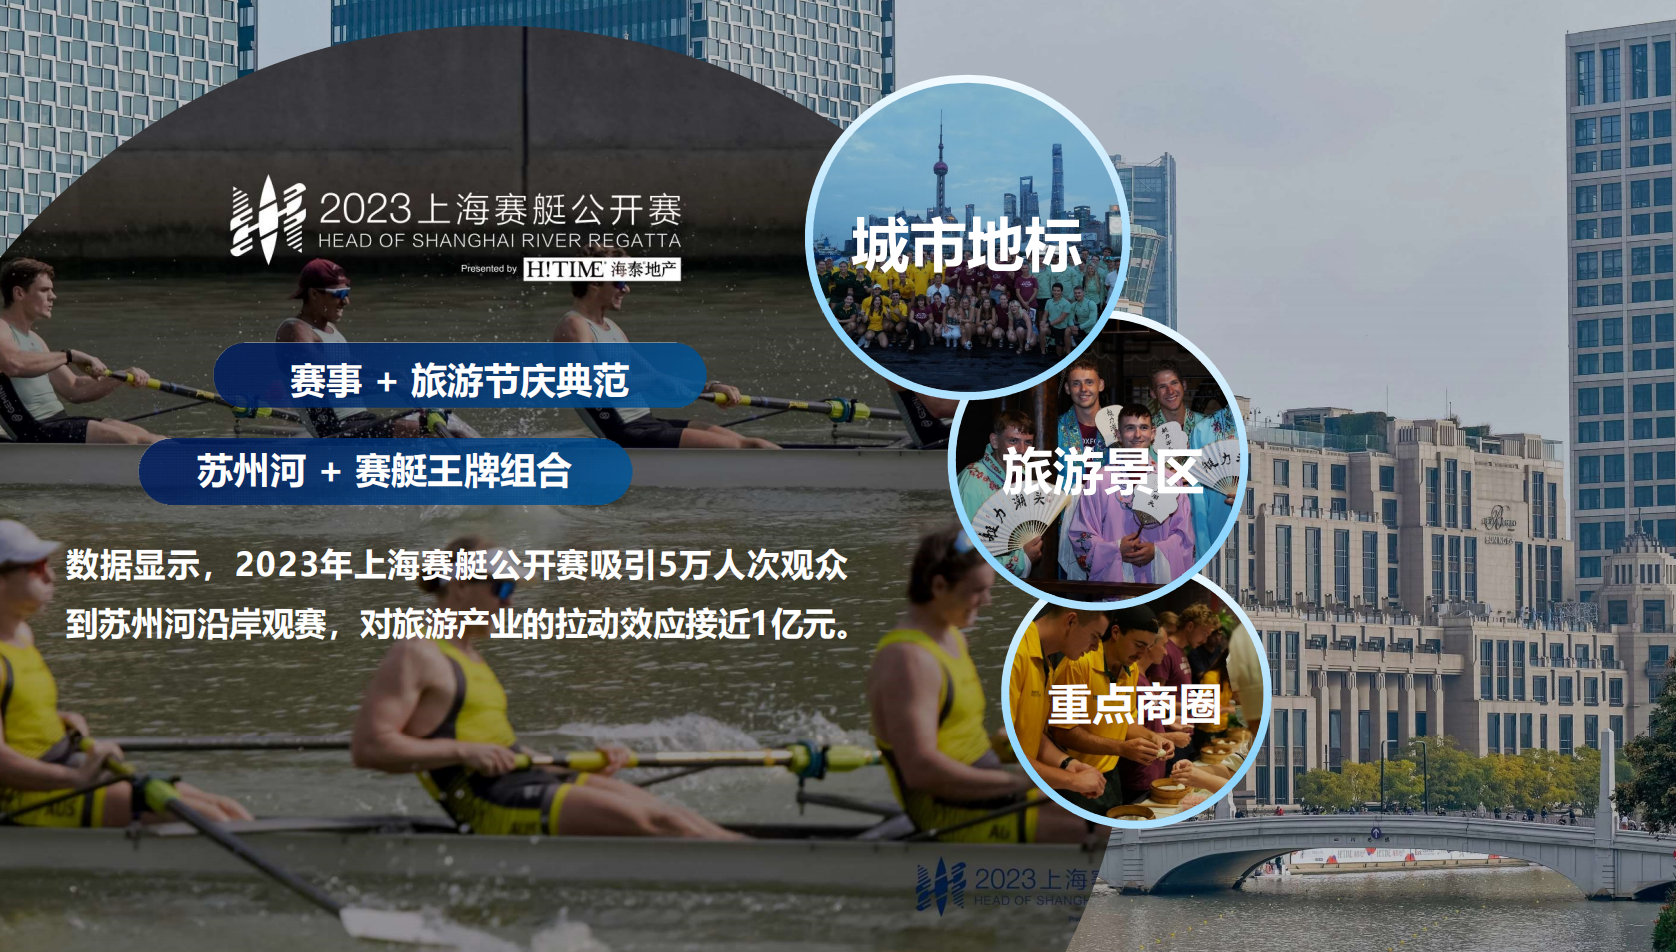 上海明日之星冠军杯等赛事影响力位居前列,展现出上海自主品牌赛事